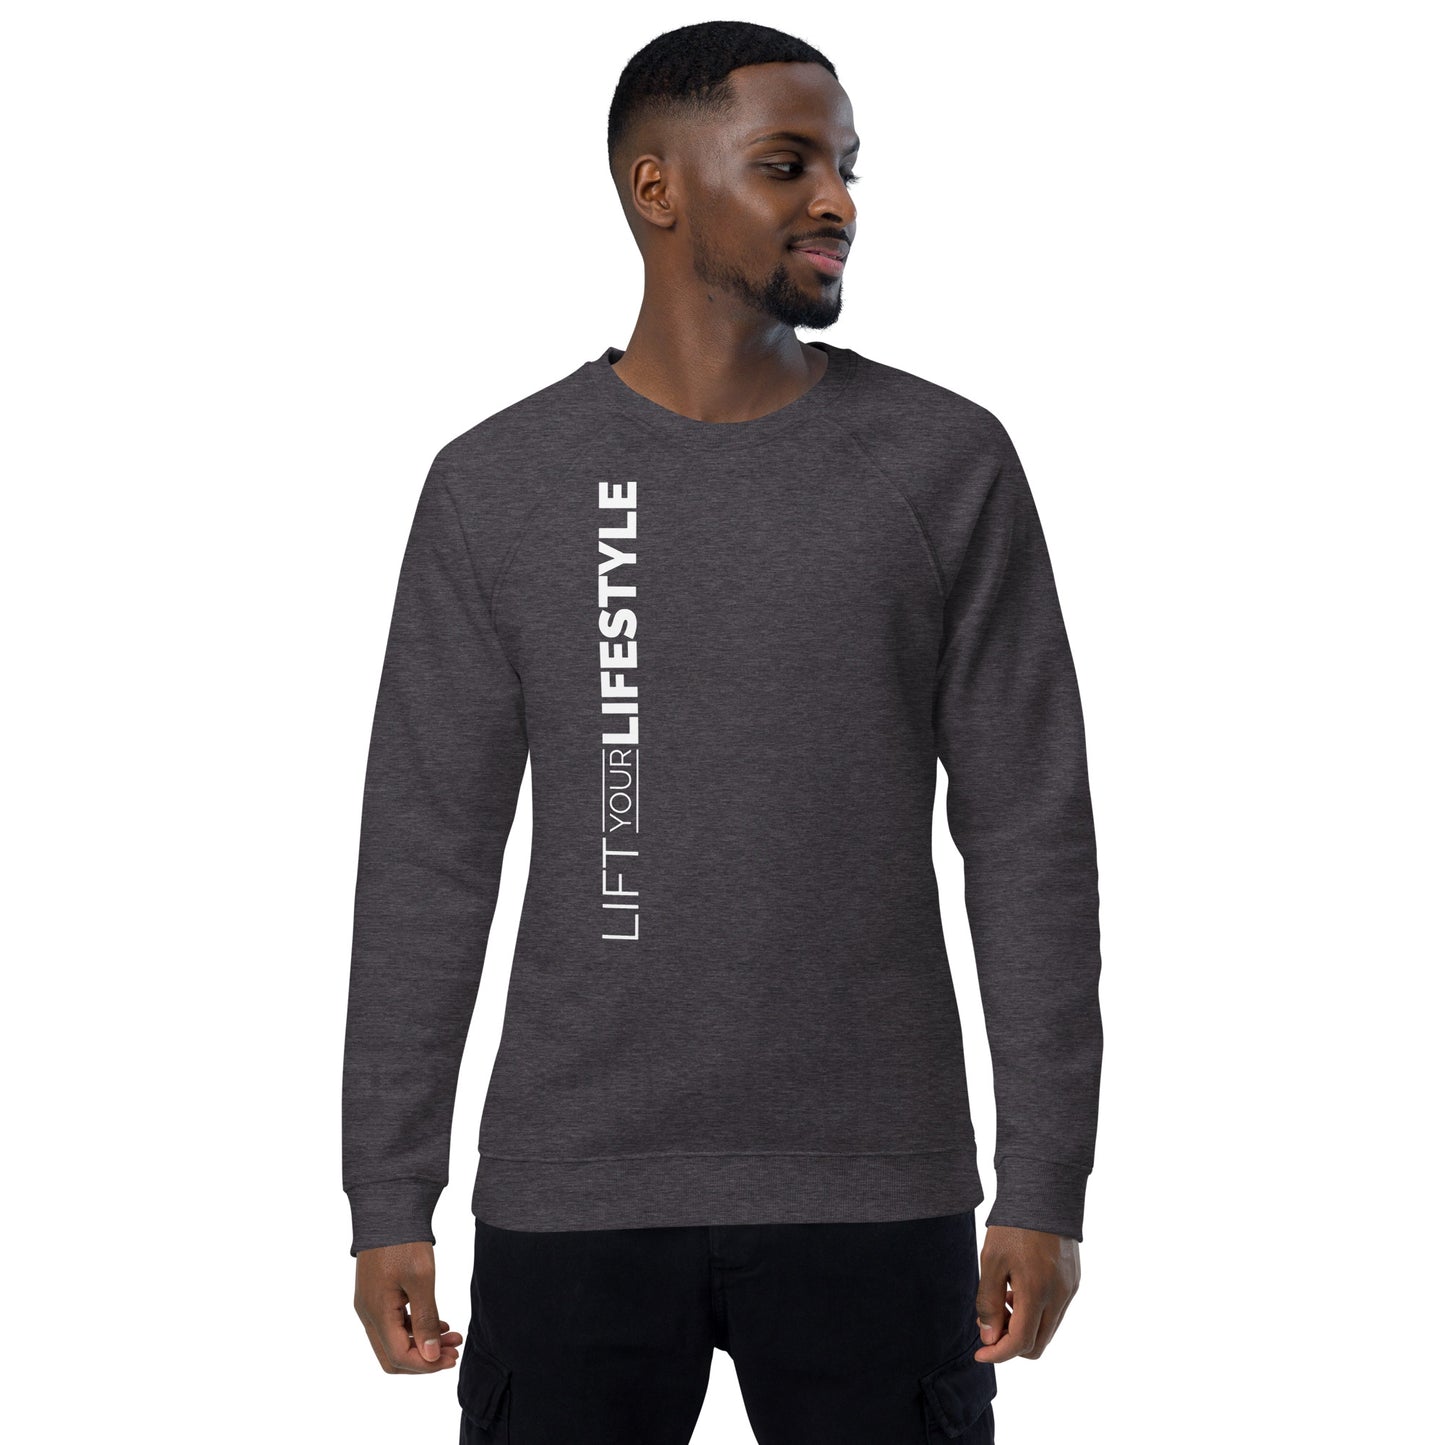 Lift Your Lifestyle Unisex organic raglan sweatshirt